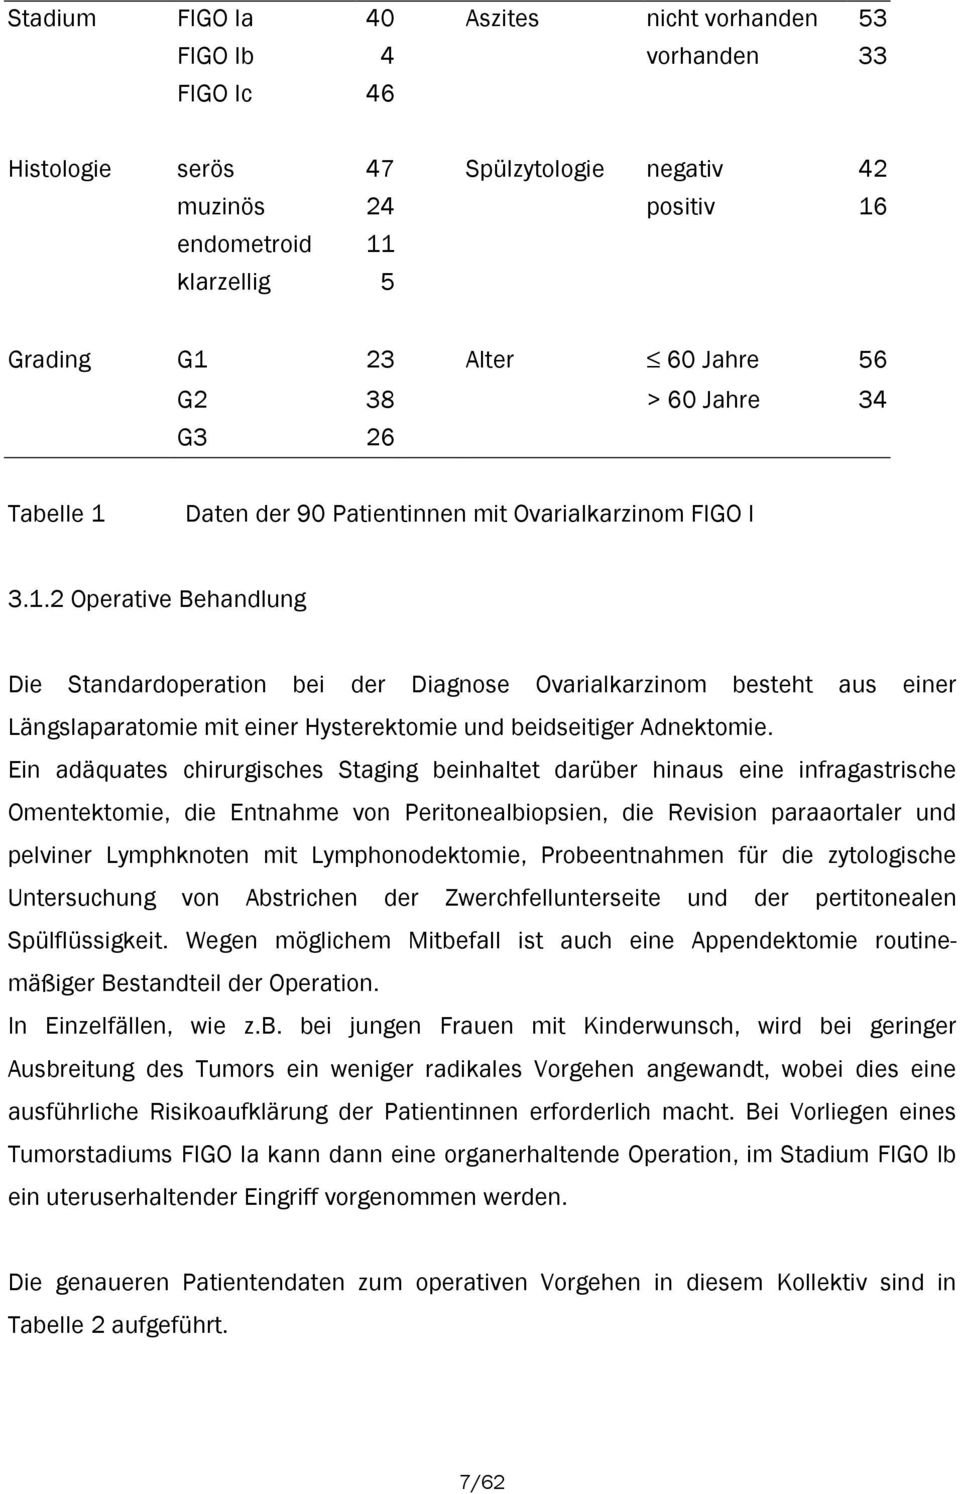 Daten der 90 Patientinnen mit Ovarialkarzinom FIGO I 3.1.